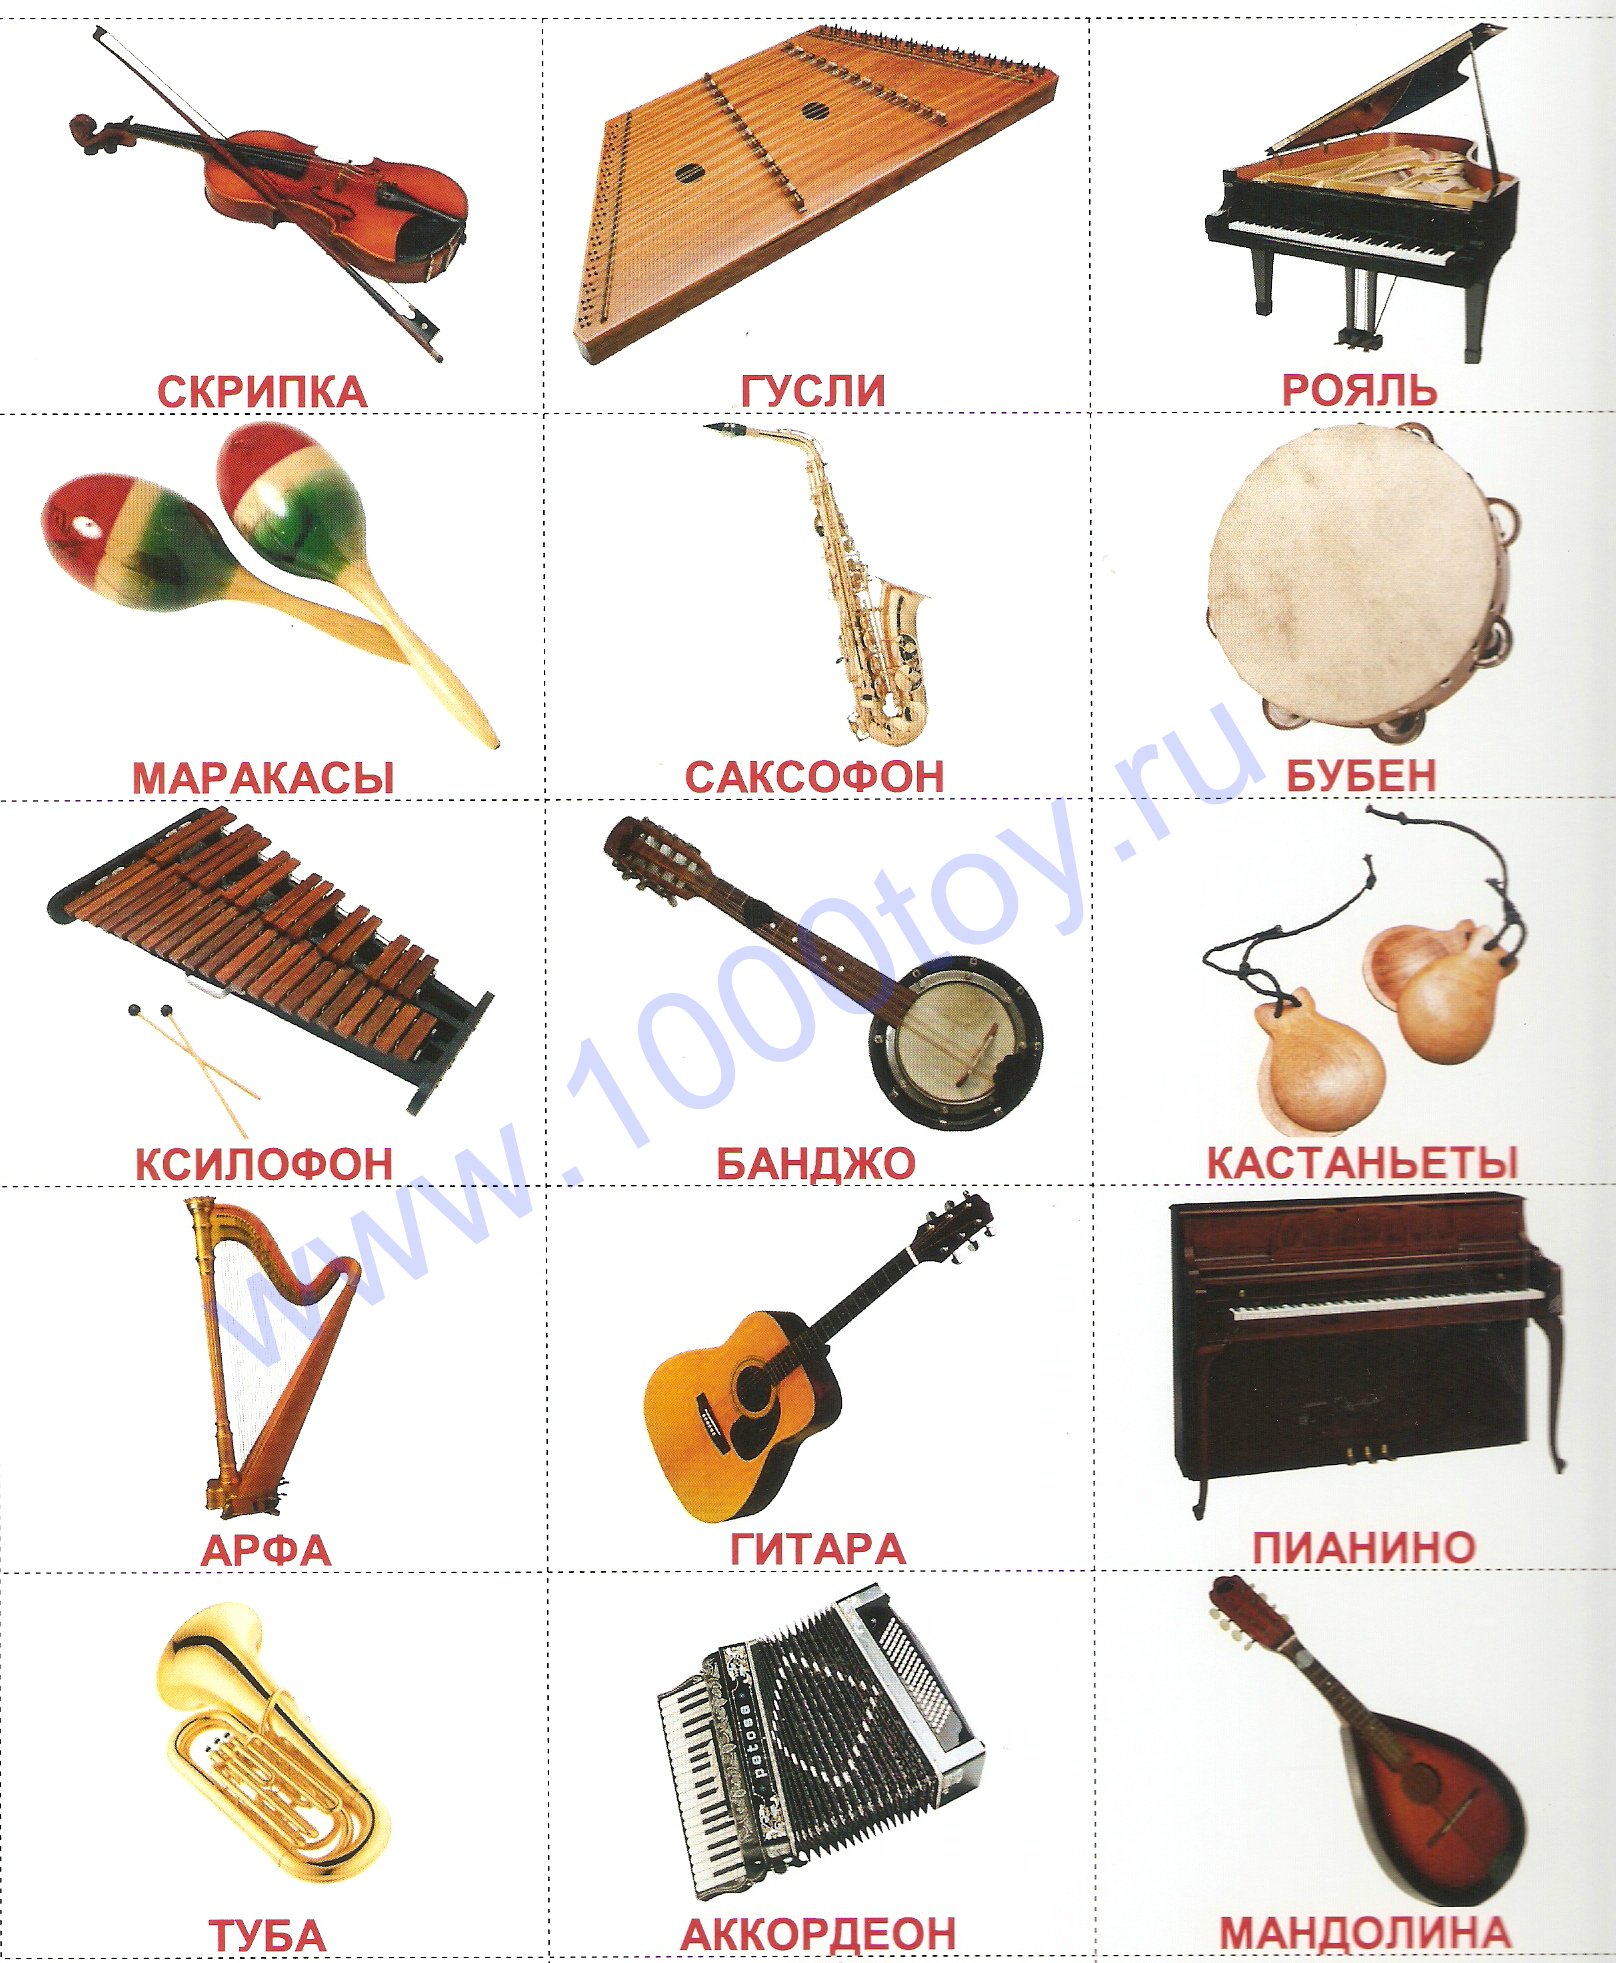 Музыкальный инструмент на е. Инструменты духовые струнные ударные и клавишные. Музыкальные инструменты струнные духовые ударные клавишные. Духовые, ударные и струнно Щипковые инструменты. Русские народные инструменты струнные ударные духовые клавишные.